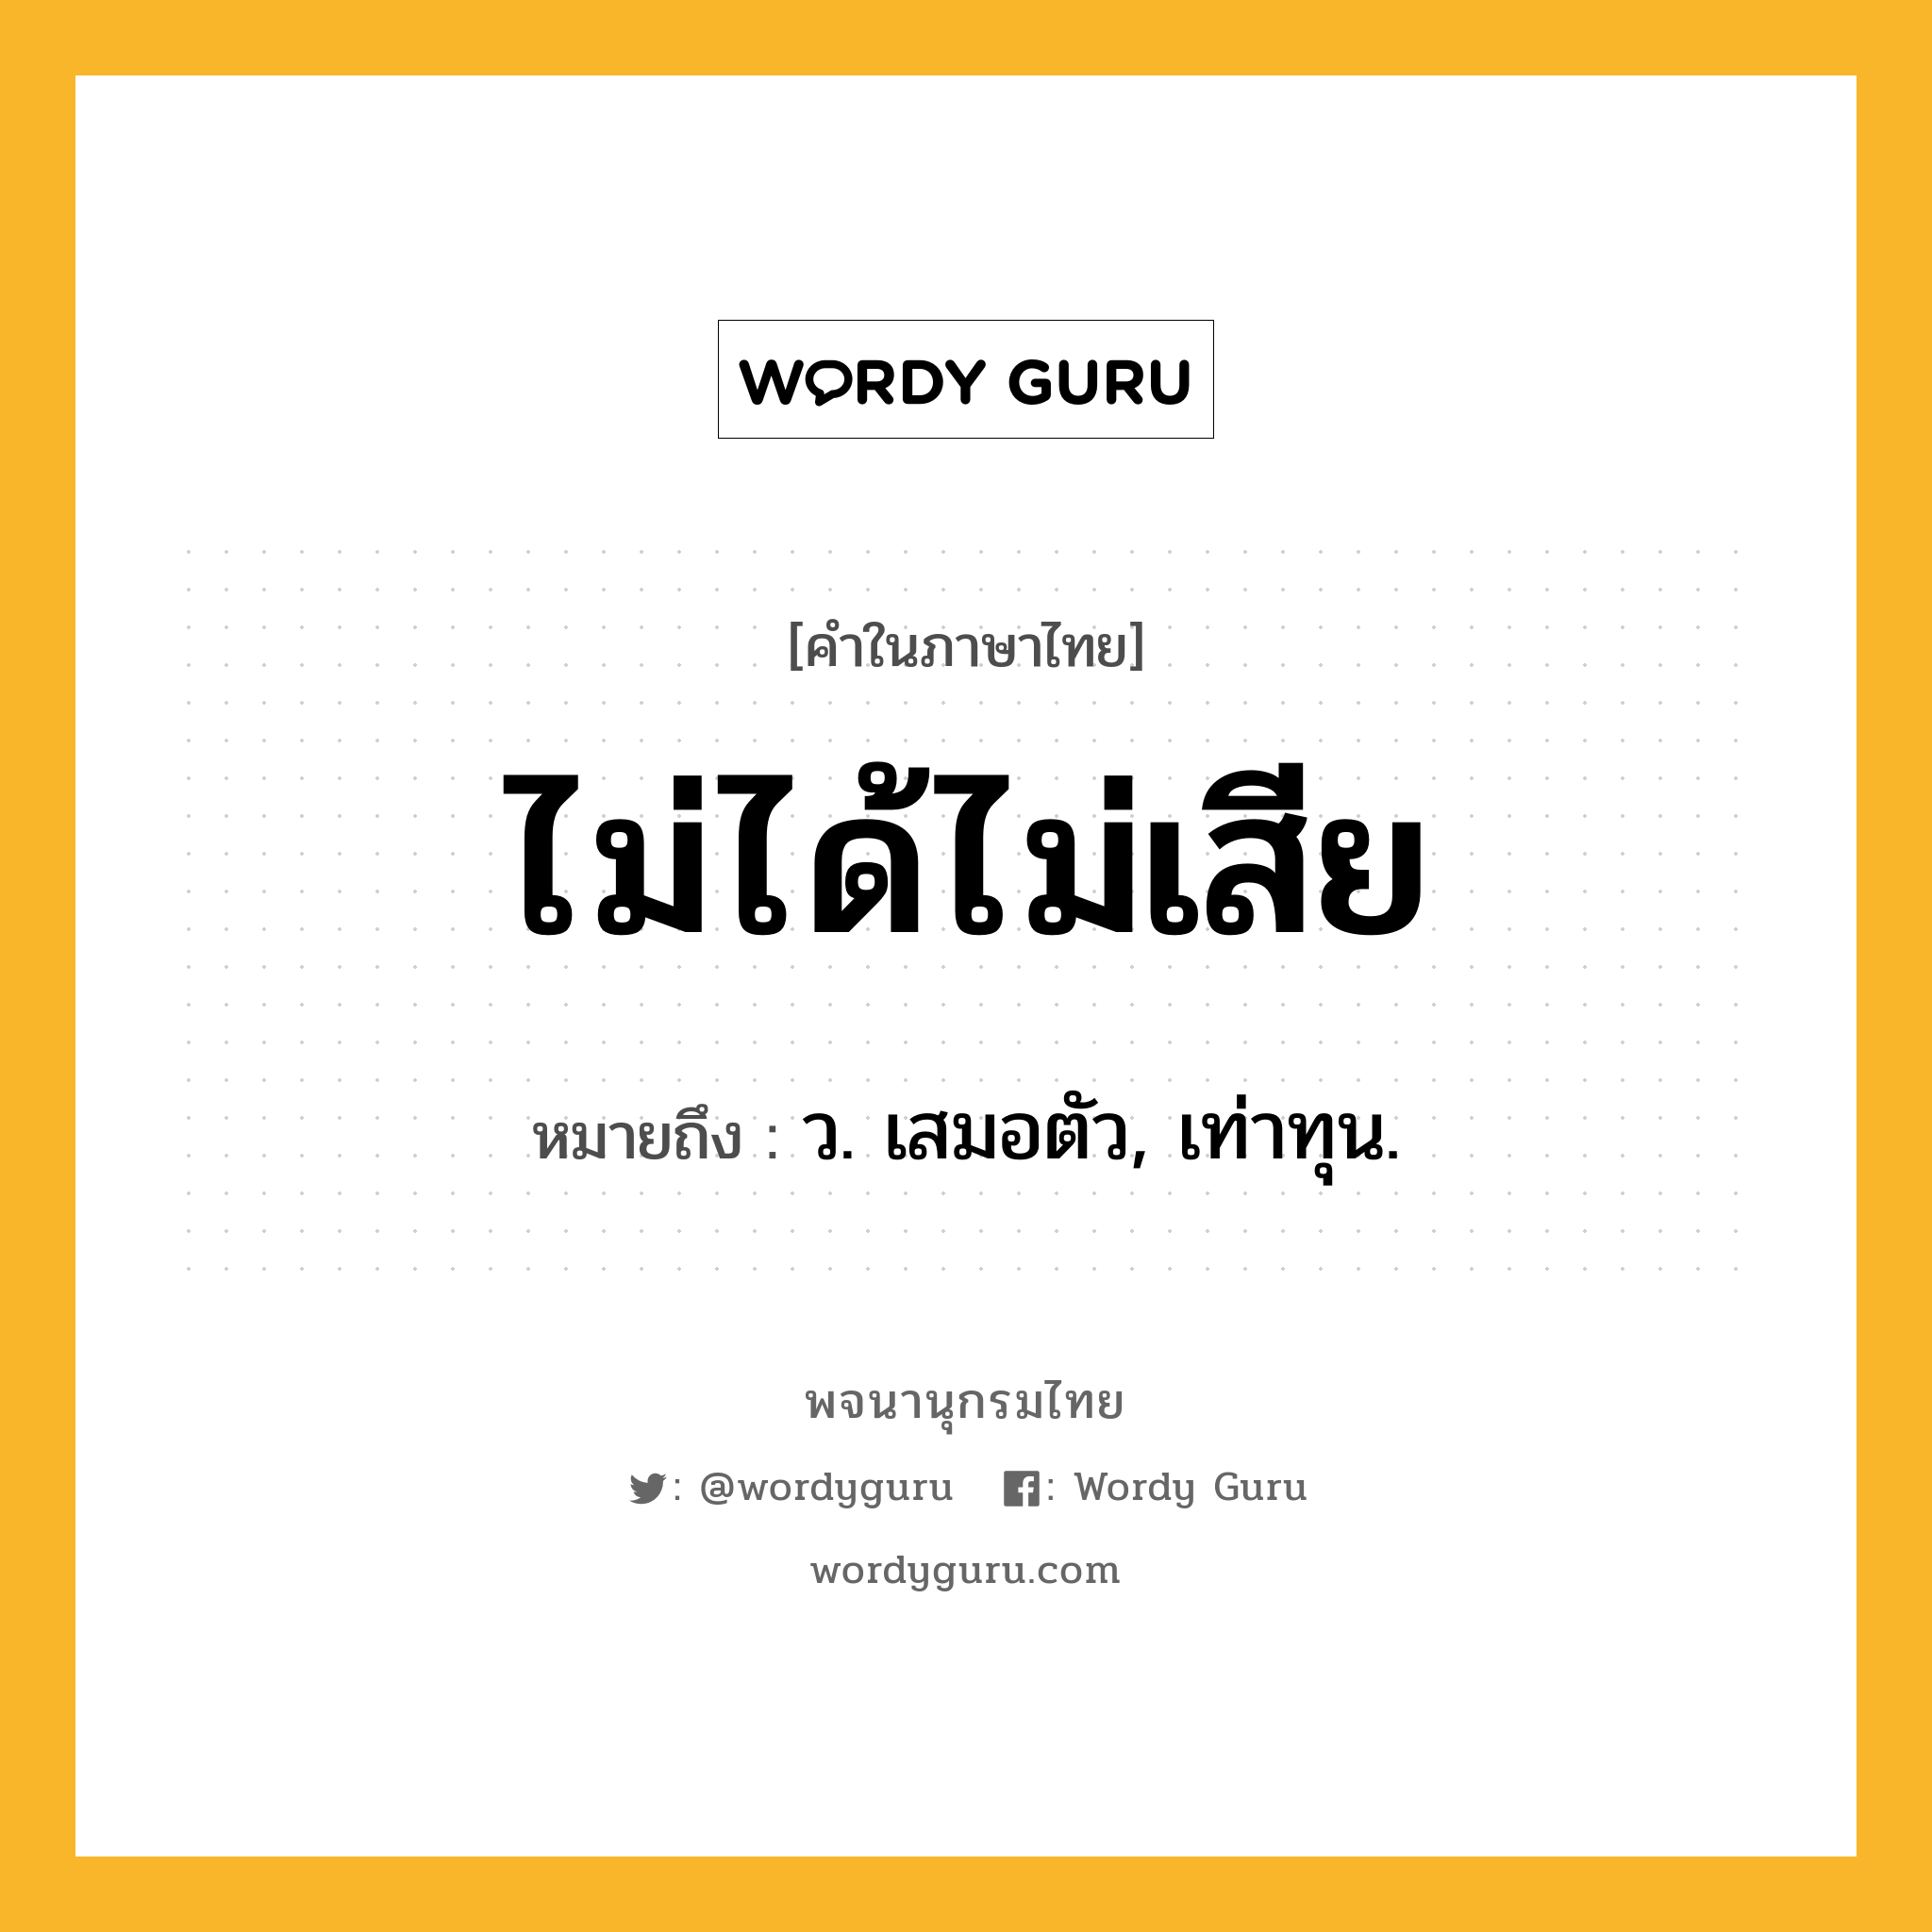 ไม่ได้ไม่เสีย ความหมาย หมายถึงอะไร?, คำในภาษาไทย ไม่ได้ไม่เสีย หมายถึง ว. เสมอตัว, เท่าทุน.